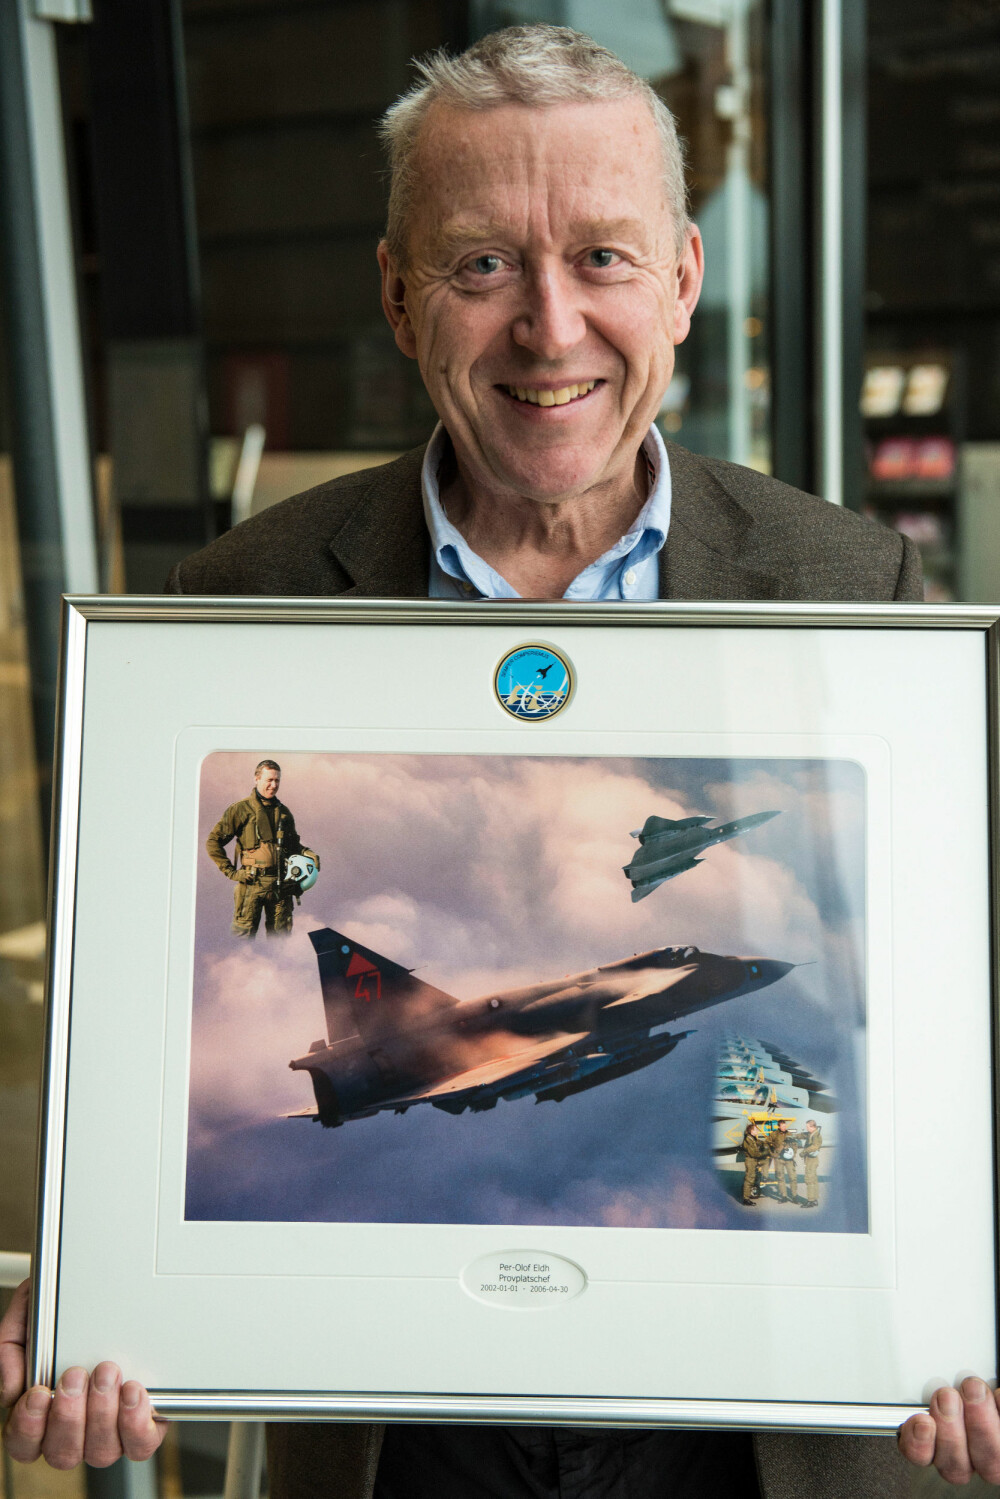 SPIONFLYDØDARE: Per-Olof Eldh klarte å komme på skuddhold av SR-71 hele fem ganger. Fotomontasjen fikk han som avskjedsgave da han pensjonerte seg som jagerpilot.